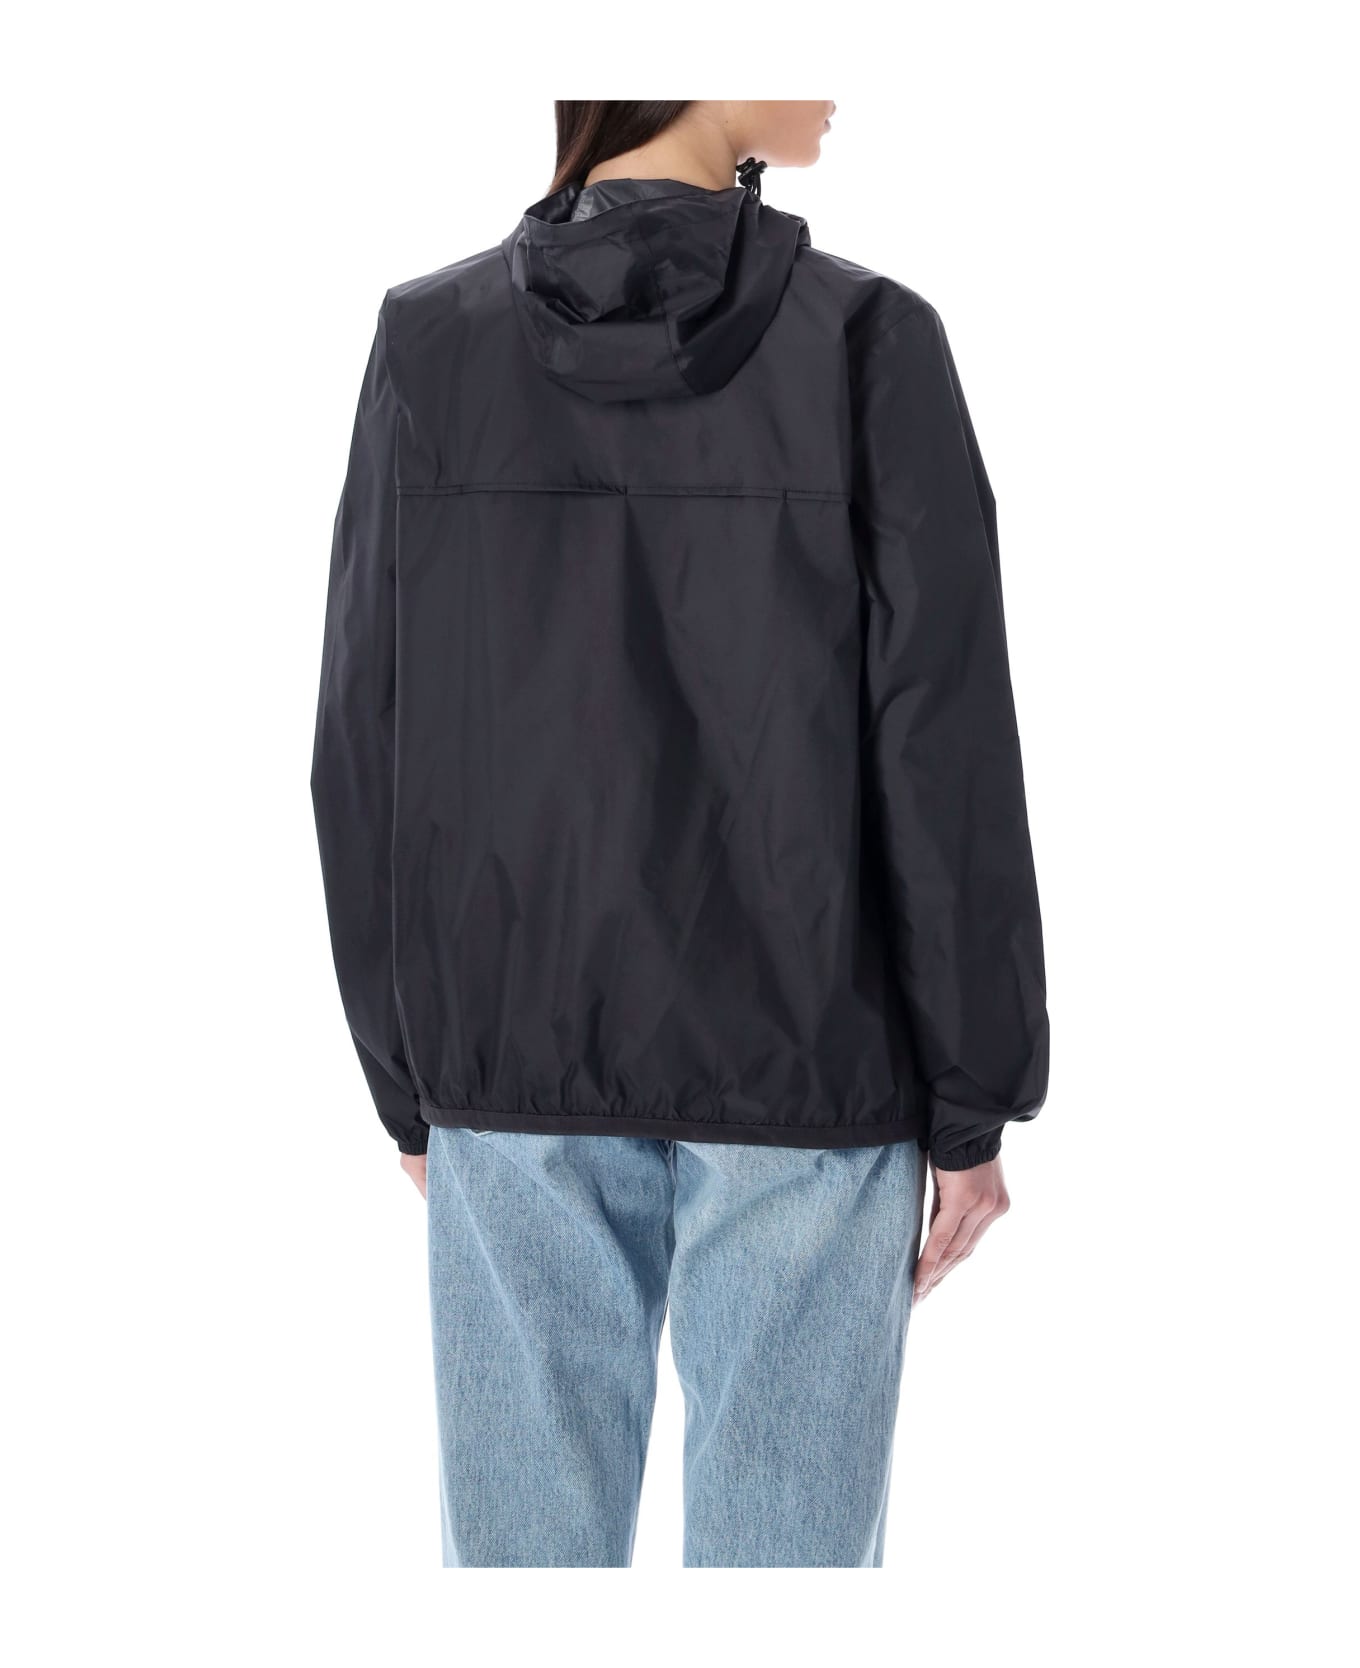 Comme des Garçons Play Bicolor Waterproof Zip Jacket With Hood - ORANGE BLACK